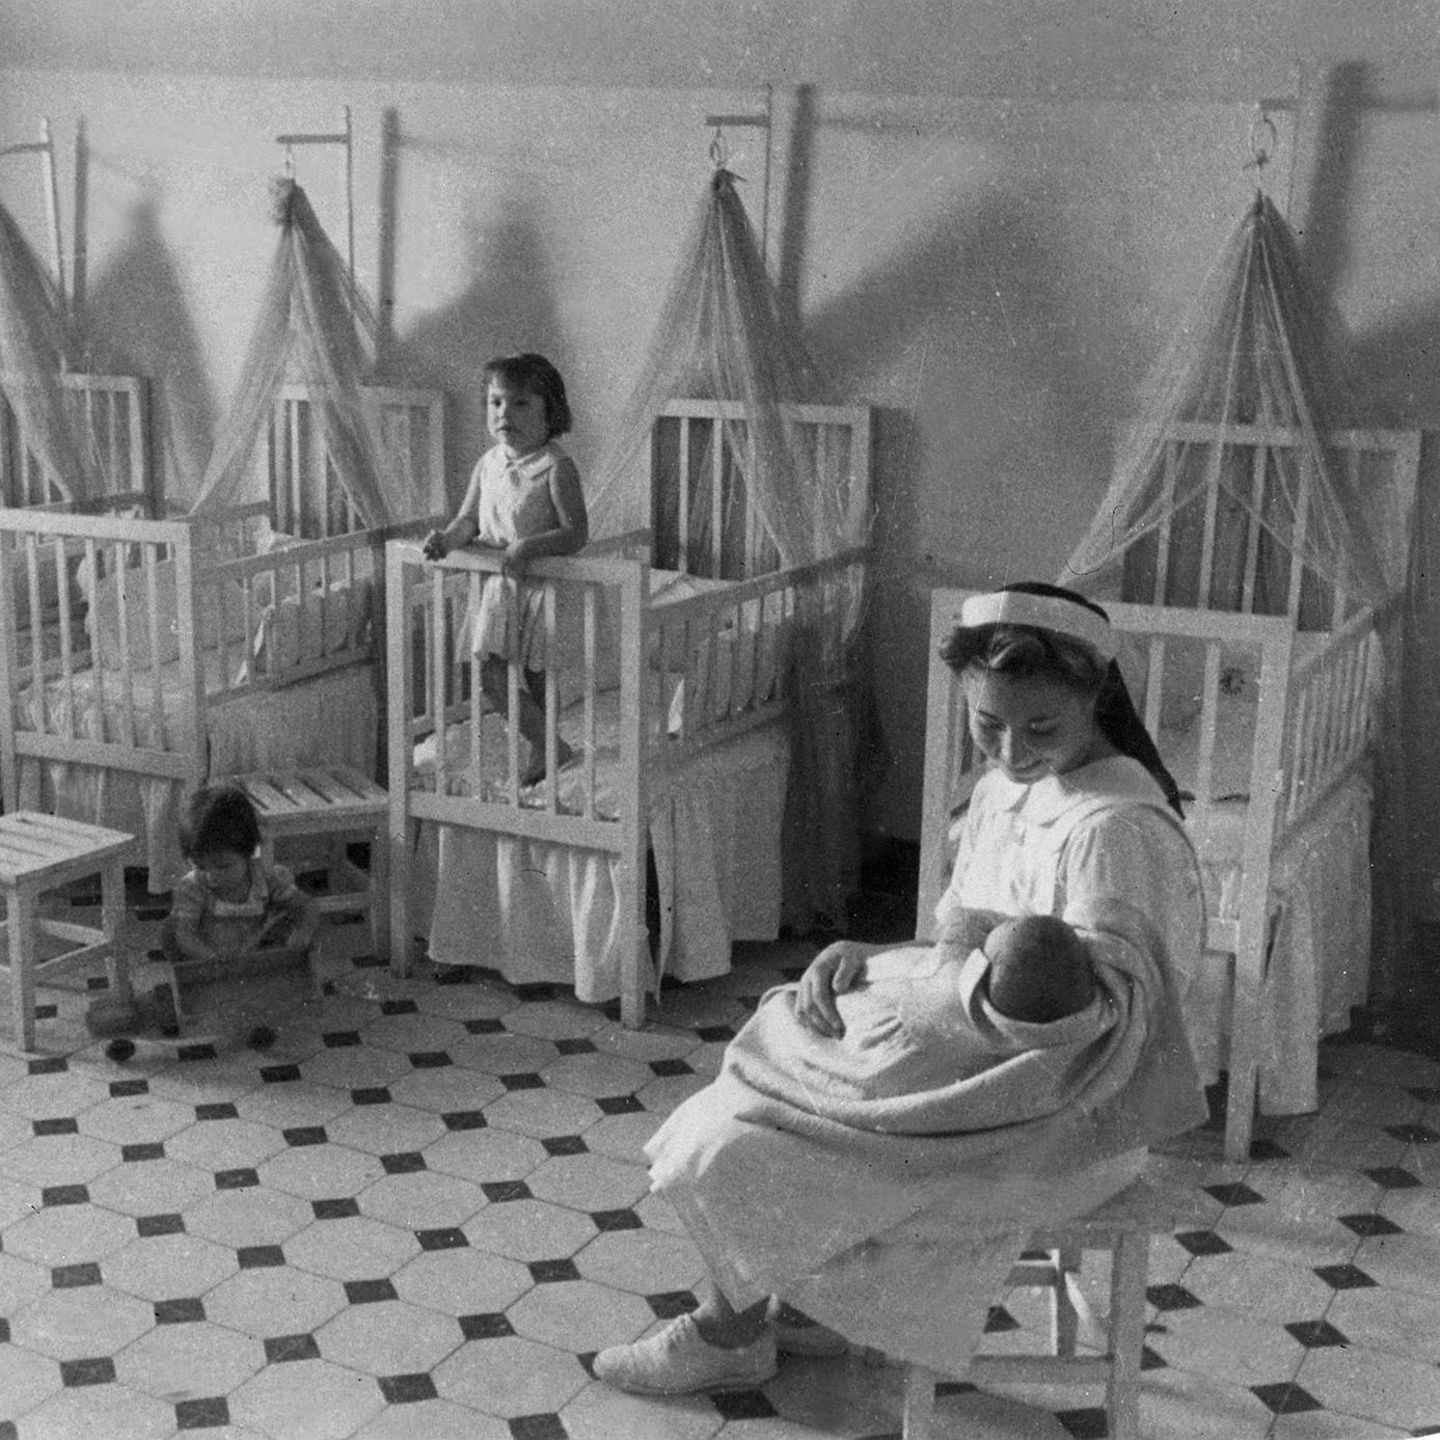 Beschaulich wirken auf Fotos wie diesem Bild aus den 1940er Jahren die Kinderheime des Auxilio Social ("Sozialhilfe"), einer Organisation der faschistischen Bewegung. Doch ehemalige Bewohner berichten von Hunger, Schikanen und harten Strafen